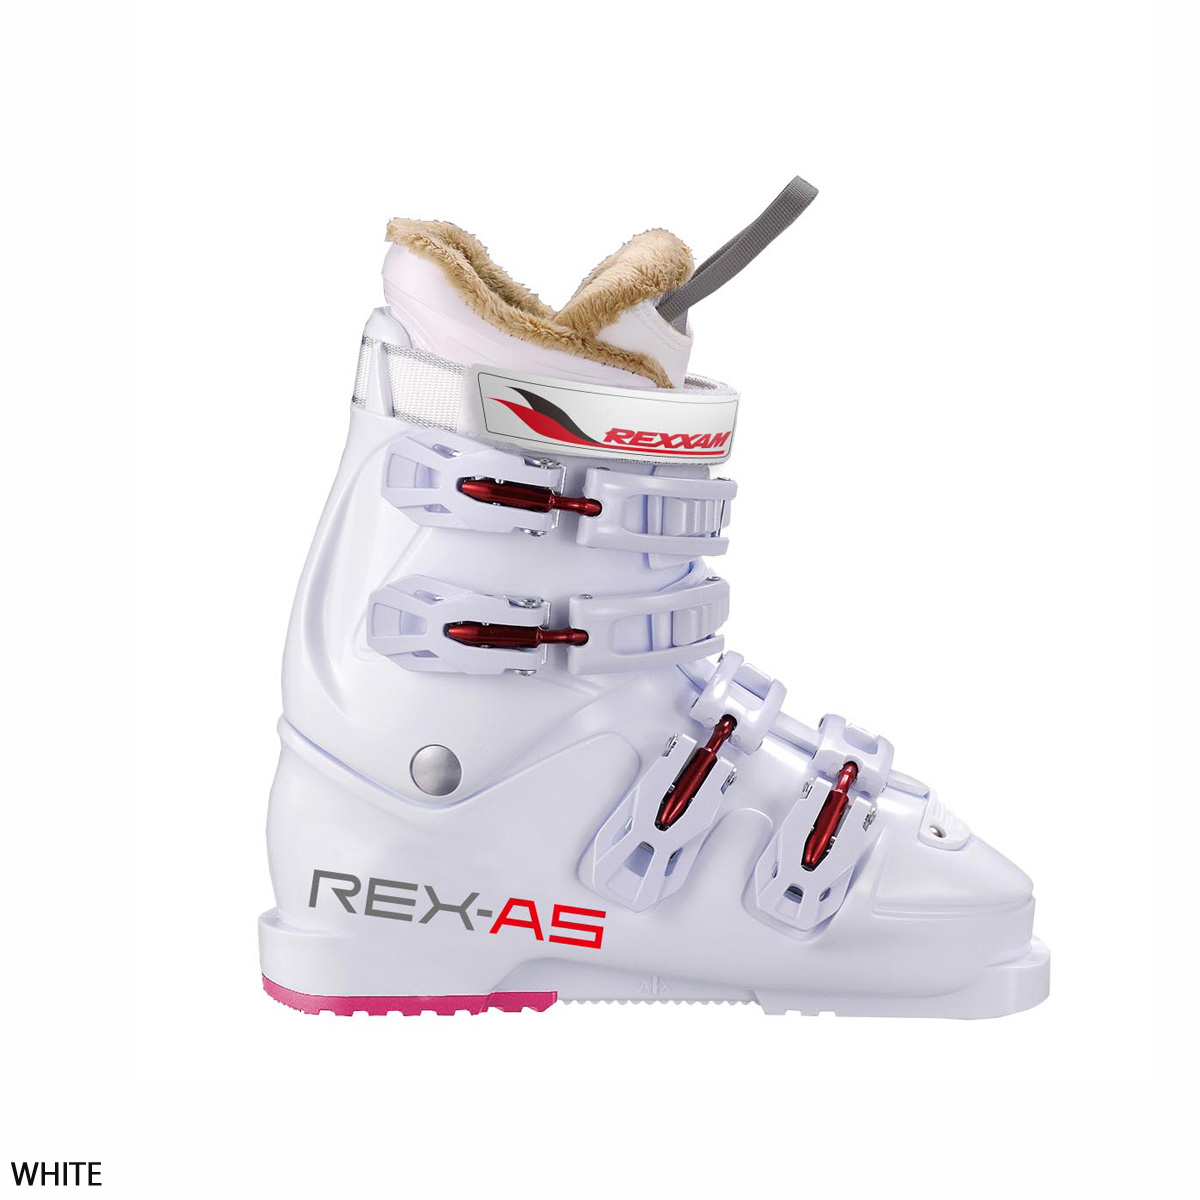 REXXAMrek Zam лыжи ботинки мужской женский <2025> REX A5( Rex A5)